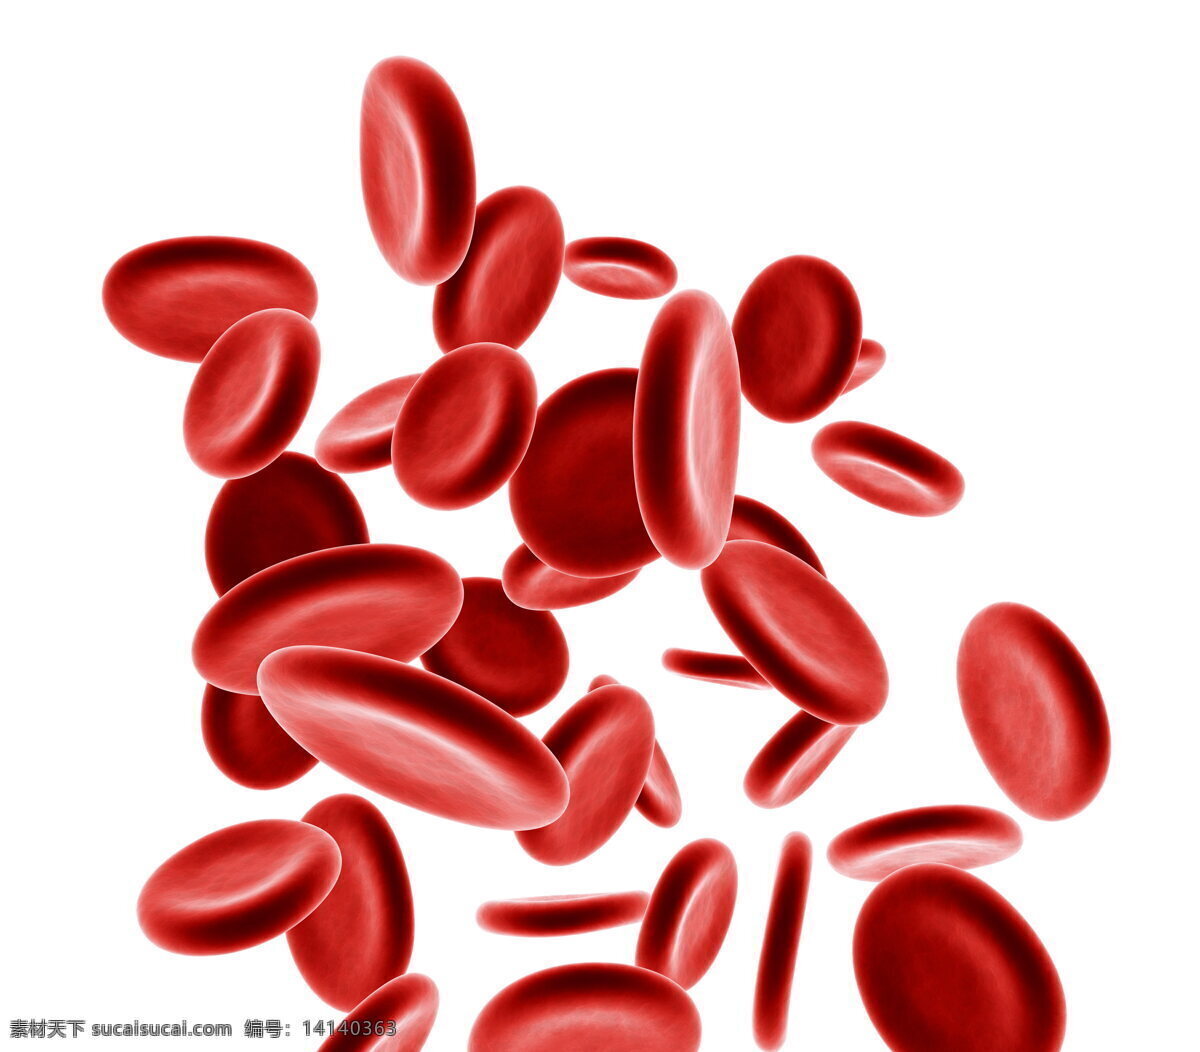 红色颗粒 红细胞 血小板 颗粒 分子 成分 红色 3d 立体 分子细胞 细胞 医疗 保健 医学 医学研究 治病 病理 健康 医学素材 医疗研究 现代科技 医疗护理